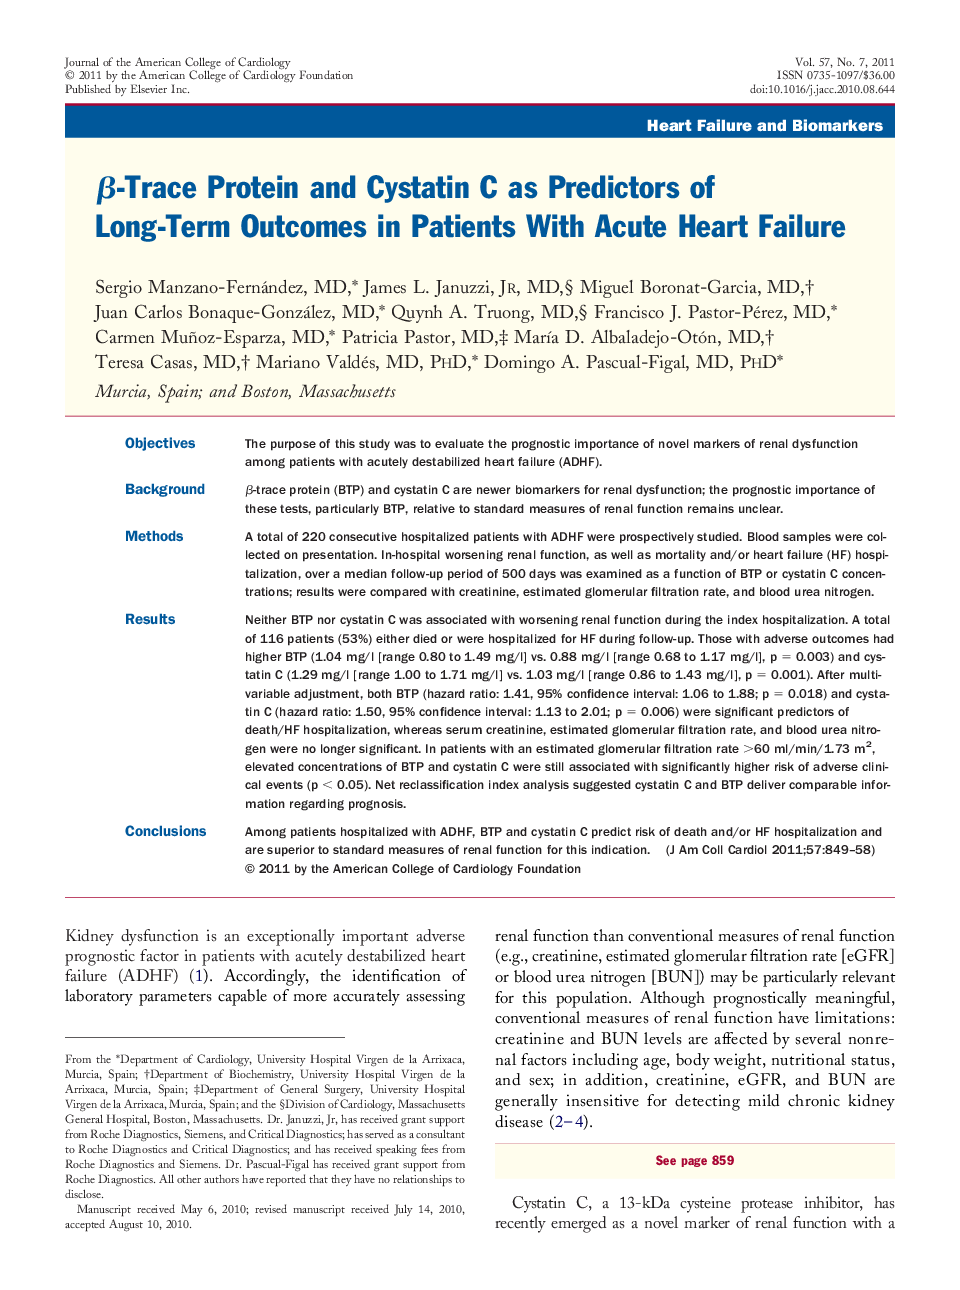 β-Trace Protein and Cystatin C as Predictors of Long-Term Outcomes in Patients With Acute Heart Failure 